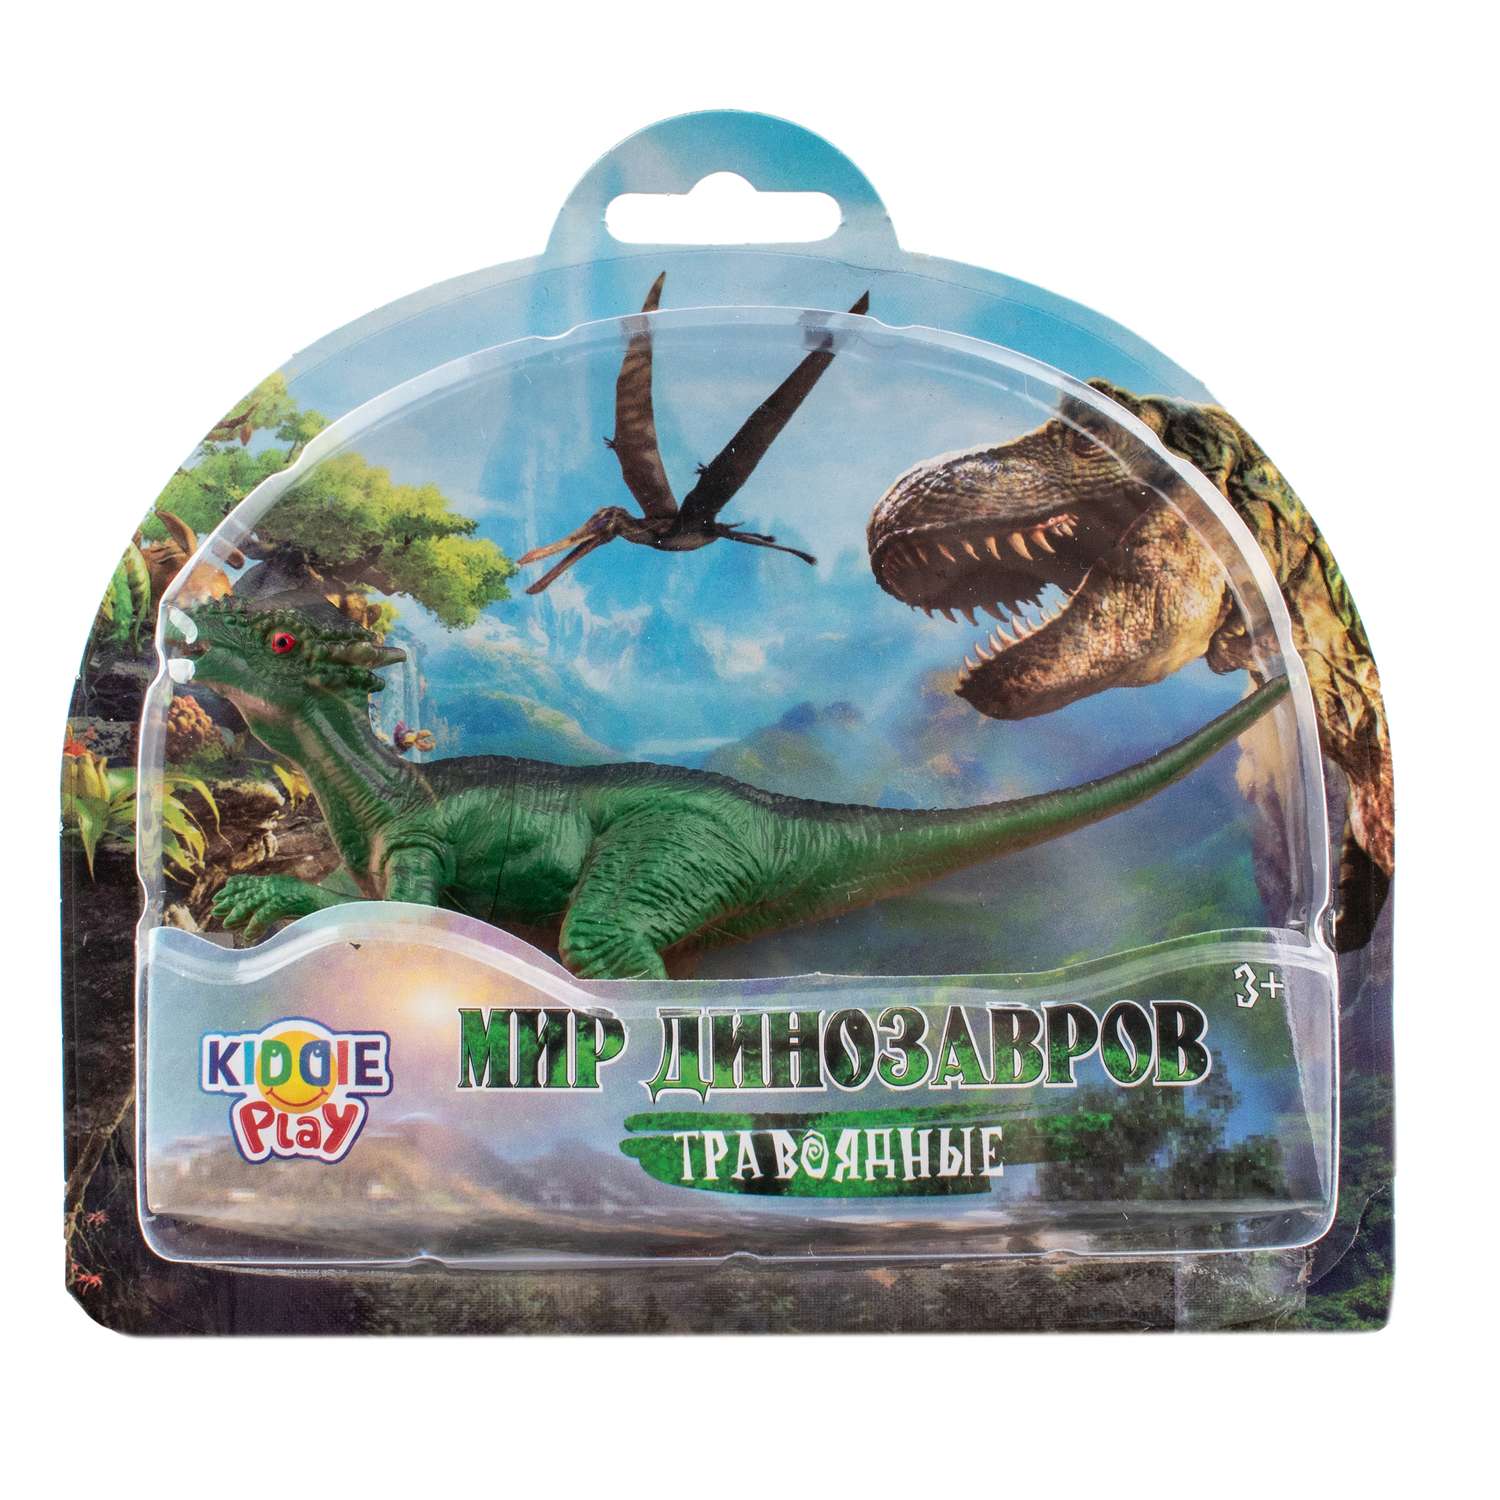 Игрушка KiddiePlay Динозавр травоядный в ассортименте 12602 - фото 3